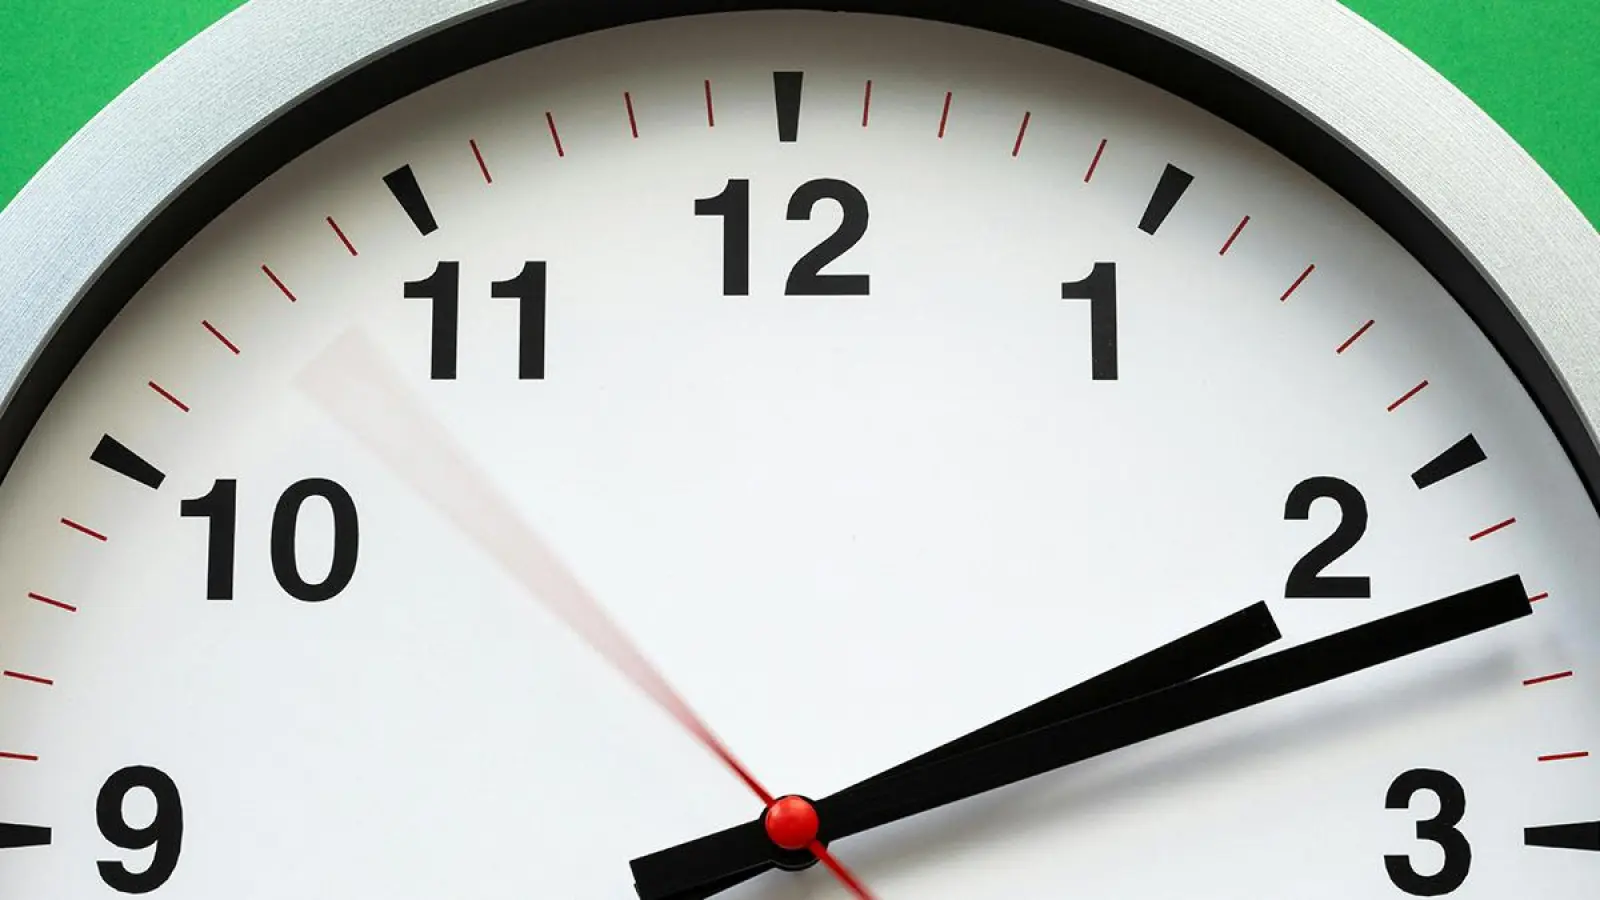 Uhr mit fortlaufenden Zeigern: In der Nacht auf Sonntag werden die Uhren auf Sommerzeit umgestellt. (Symbolbild: pexels/Stas Knop)